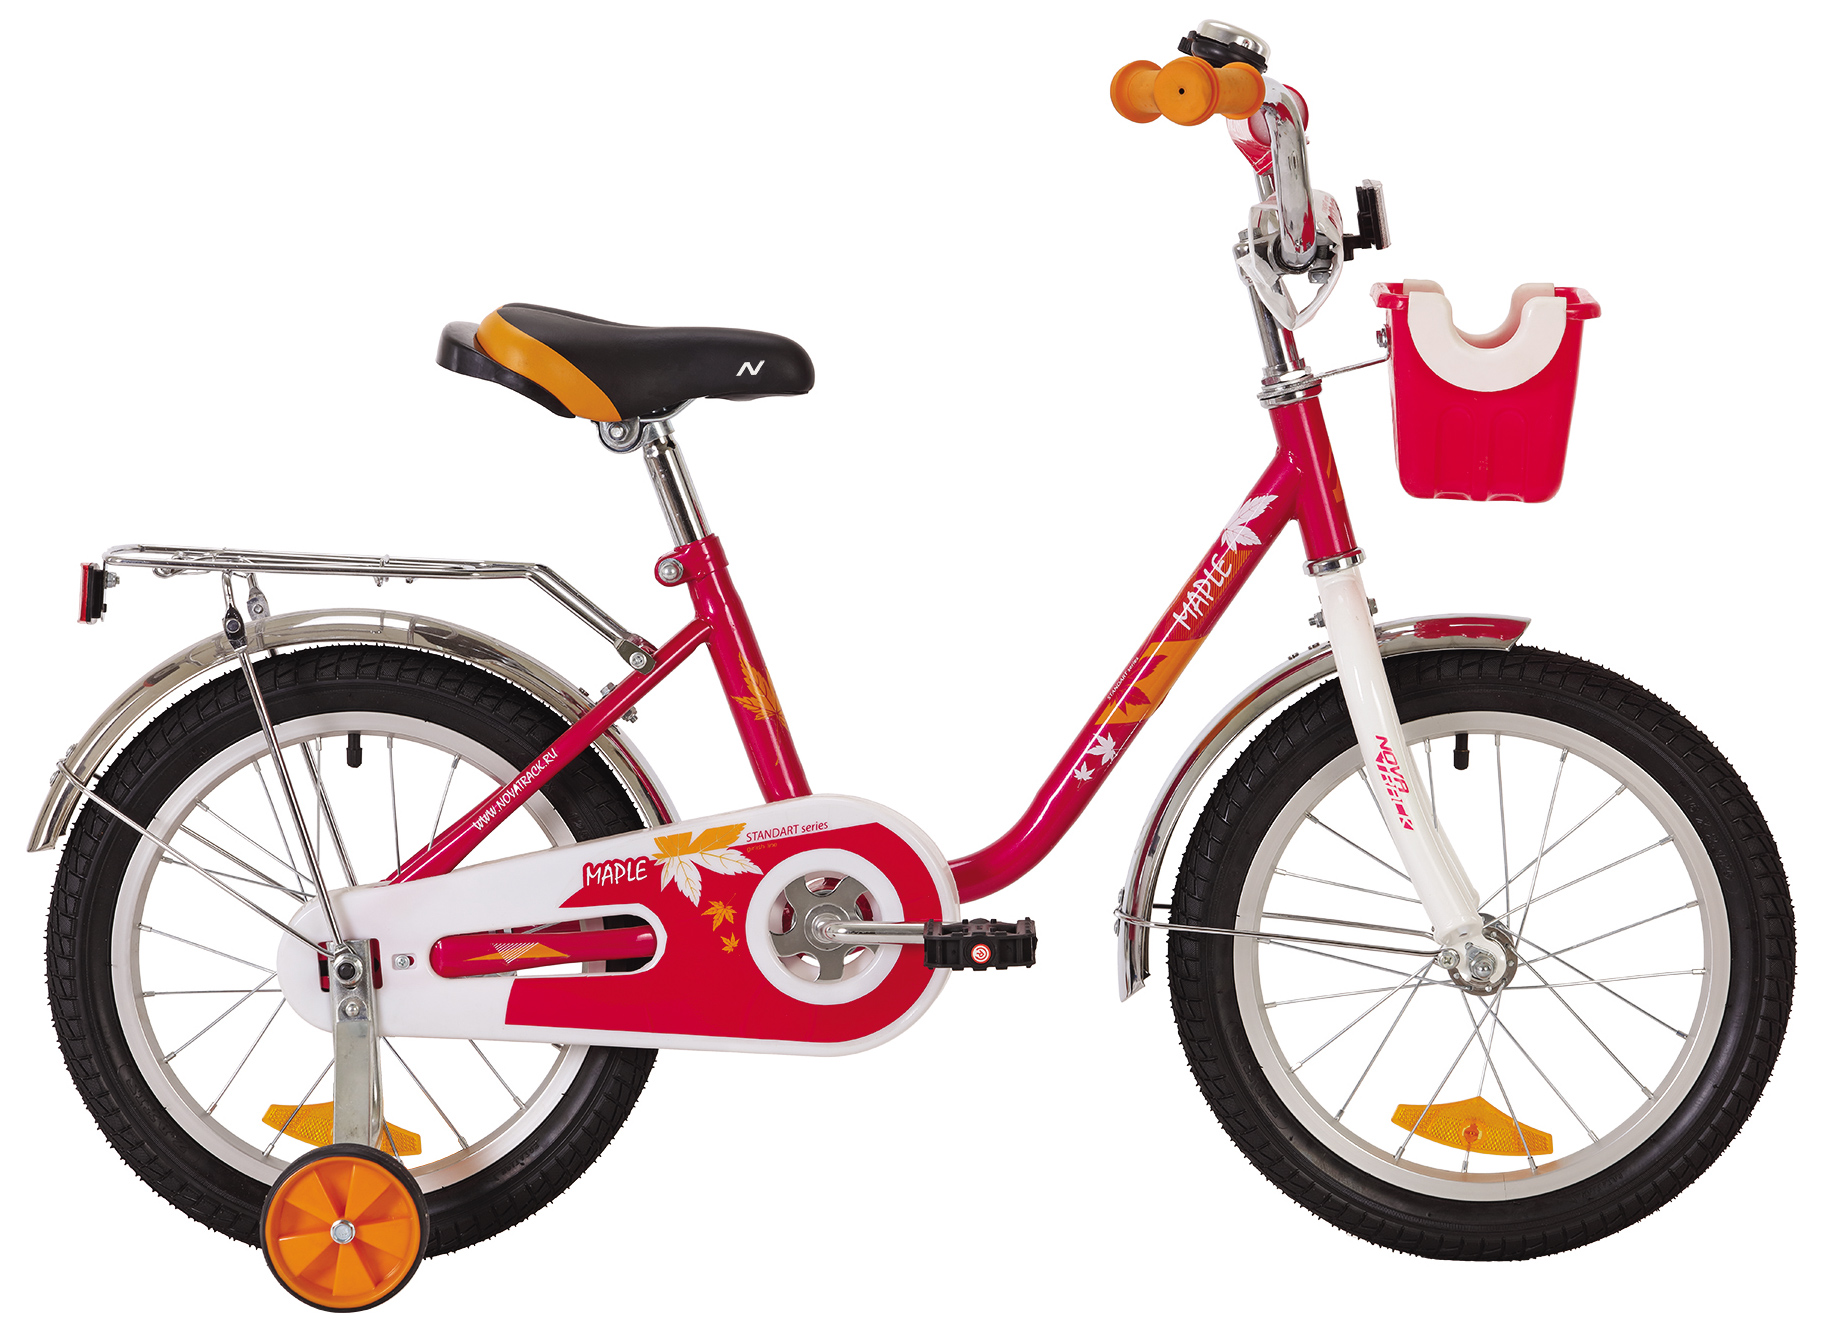  Отзывы о Детском велосипеде Novatrack Maple 16 2022